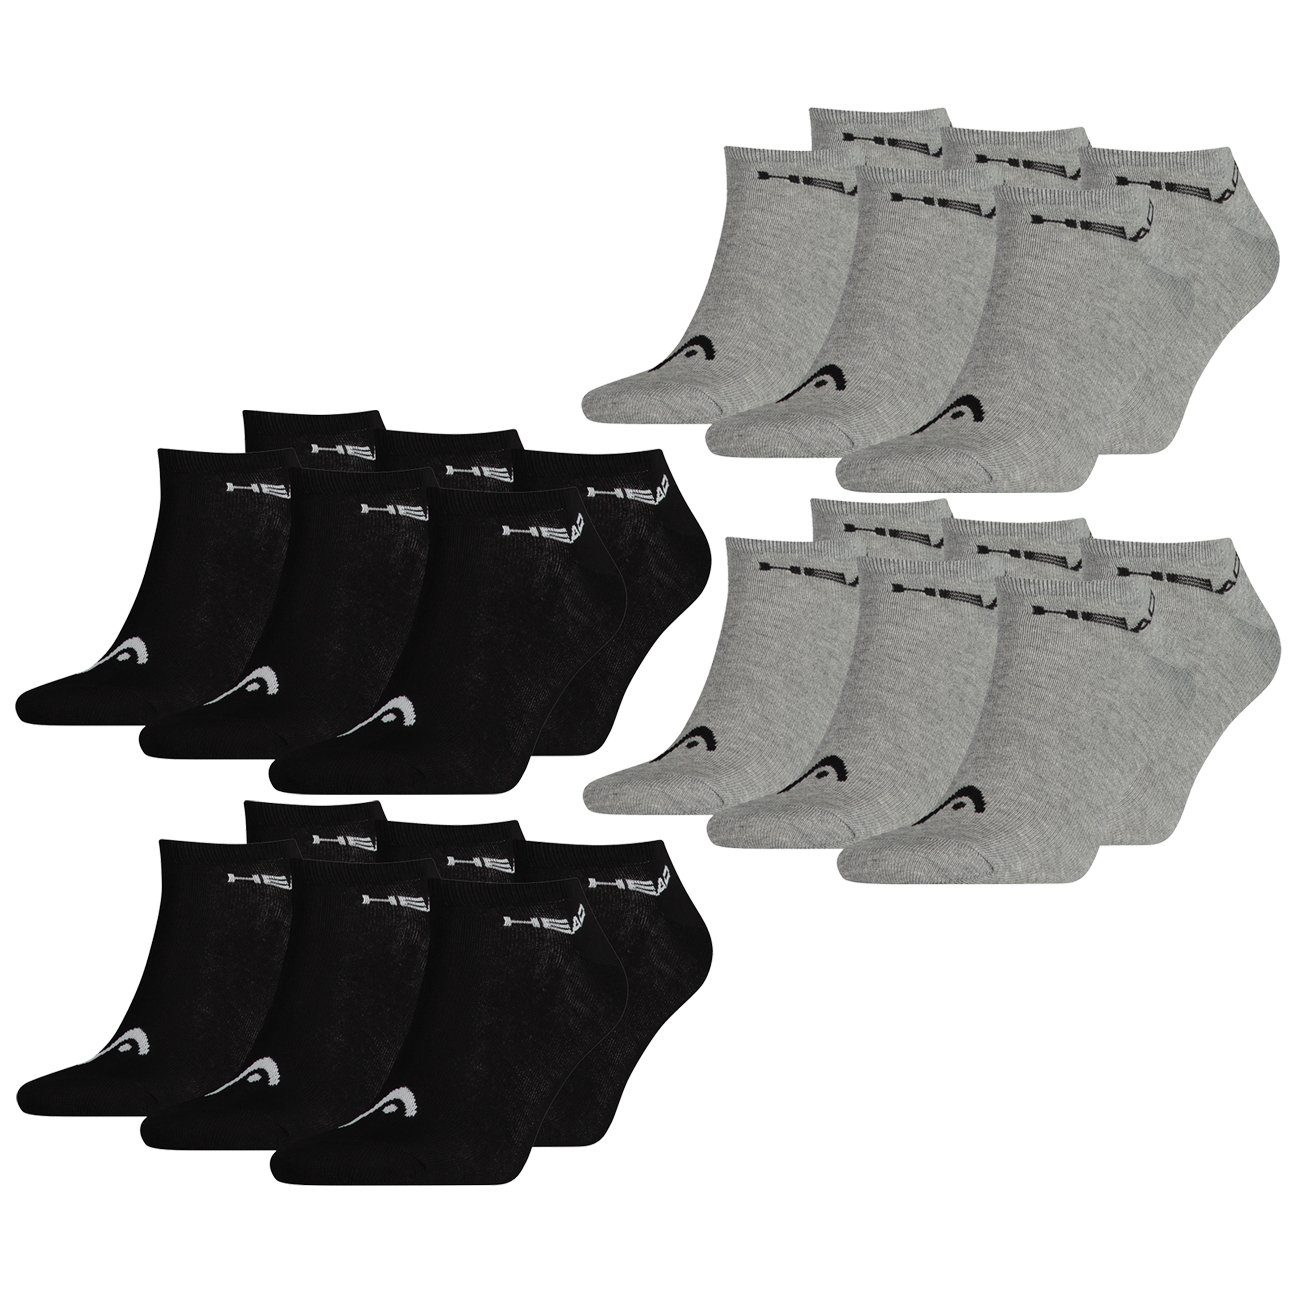 & - Paar Zehenart Black flacher Grey UNISEX (400) SNEAKER Sneakersocken 6 Pack (200) Paar 6 Head 12er mit (12-Paar)